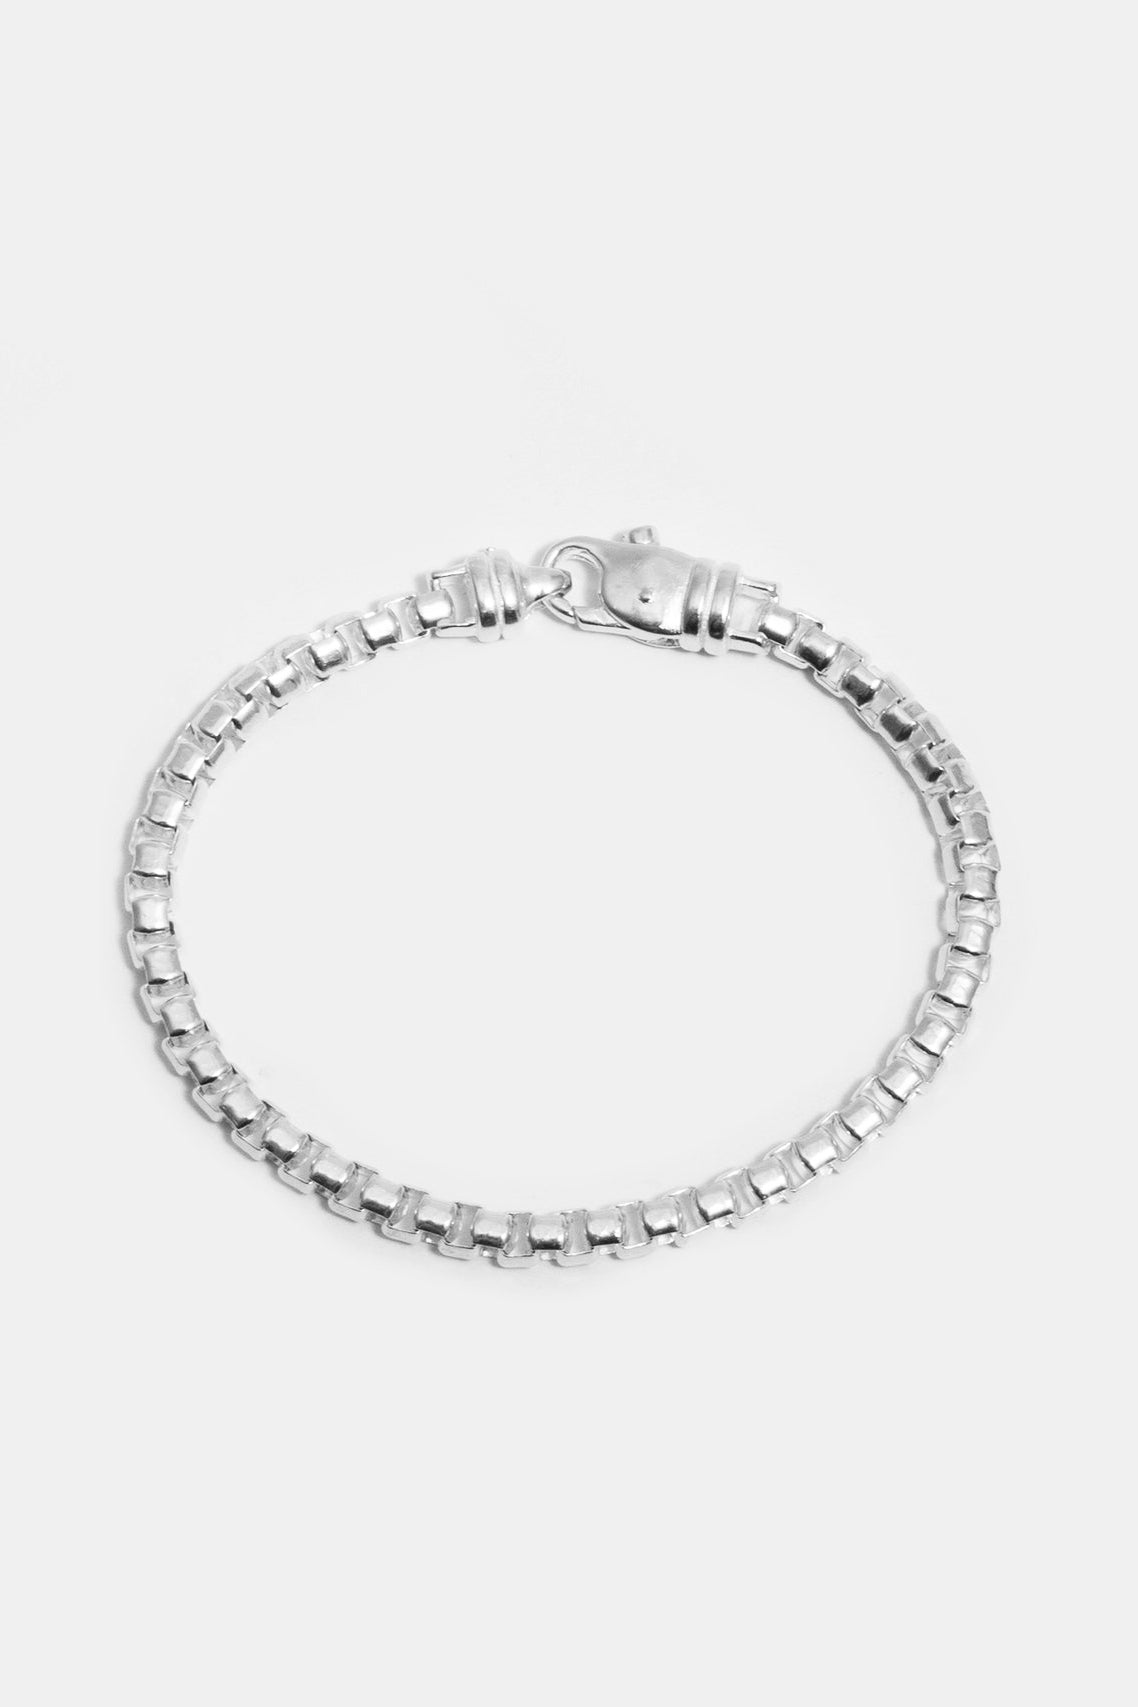 Cube Chain Bracelet in Sterling Silver